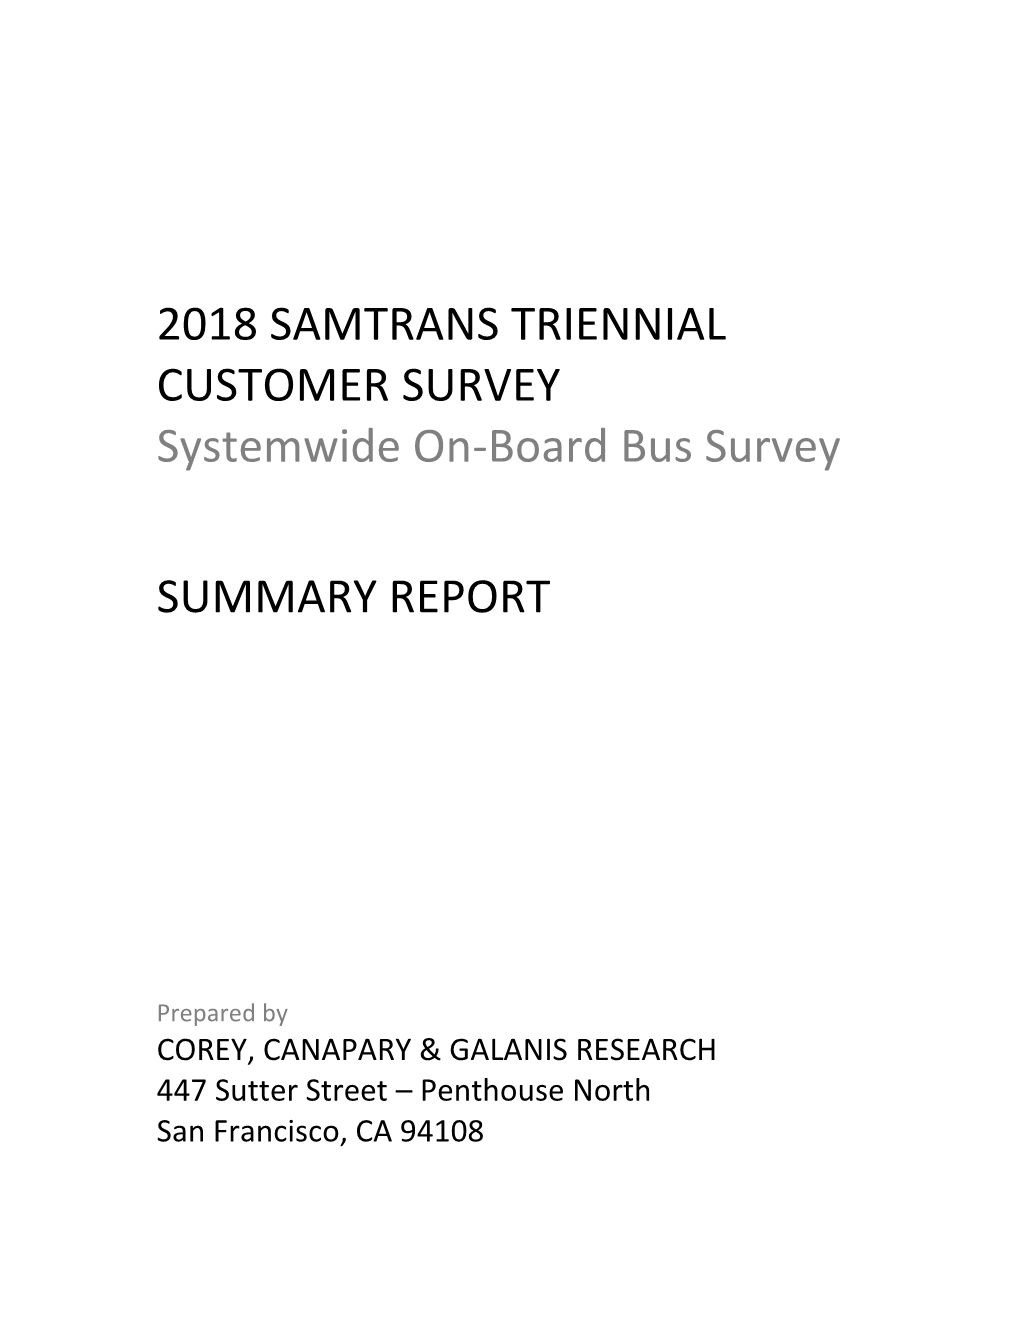 Samtrans Triennial Customer Survey Report 2018